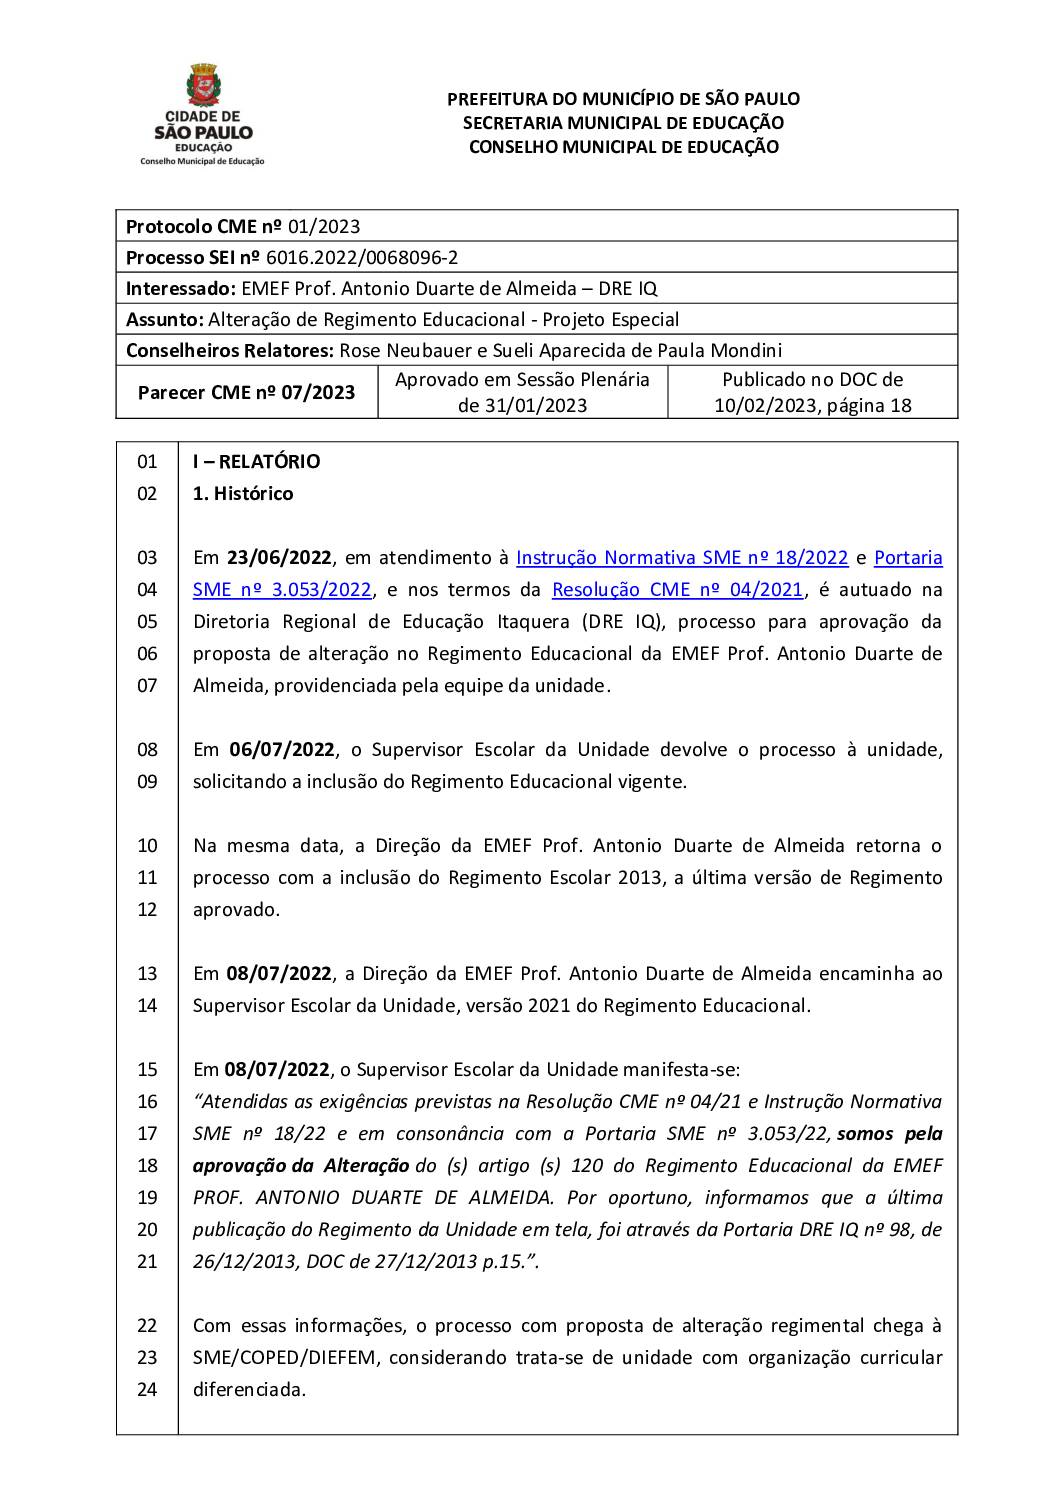 Parecer CME nº 07/2023 - EMEF Prof. Antonio Duarte de Almeida (DRE IQ) - Alteração de Regimento Educacional de Projeto Especial